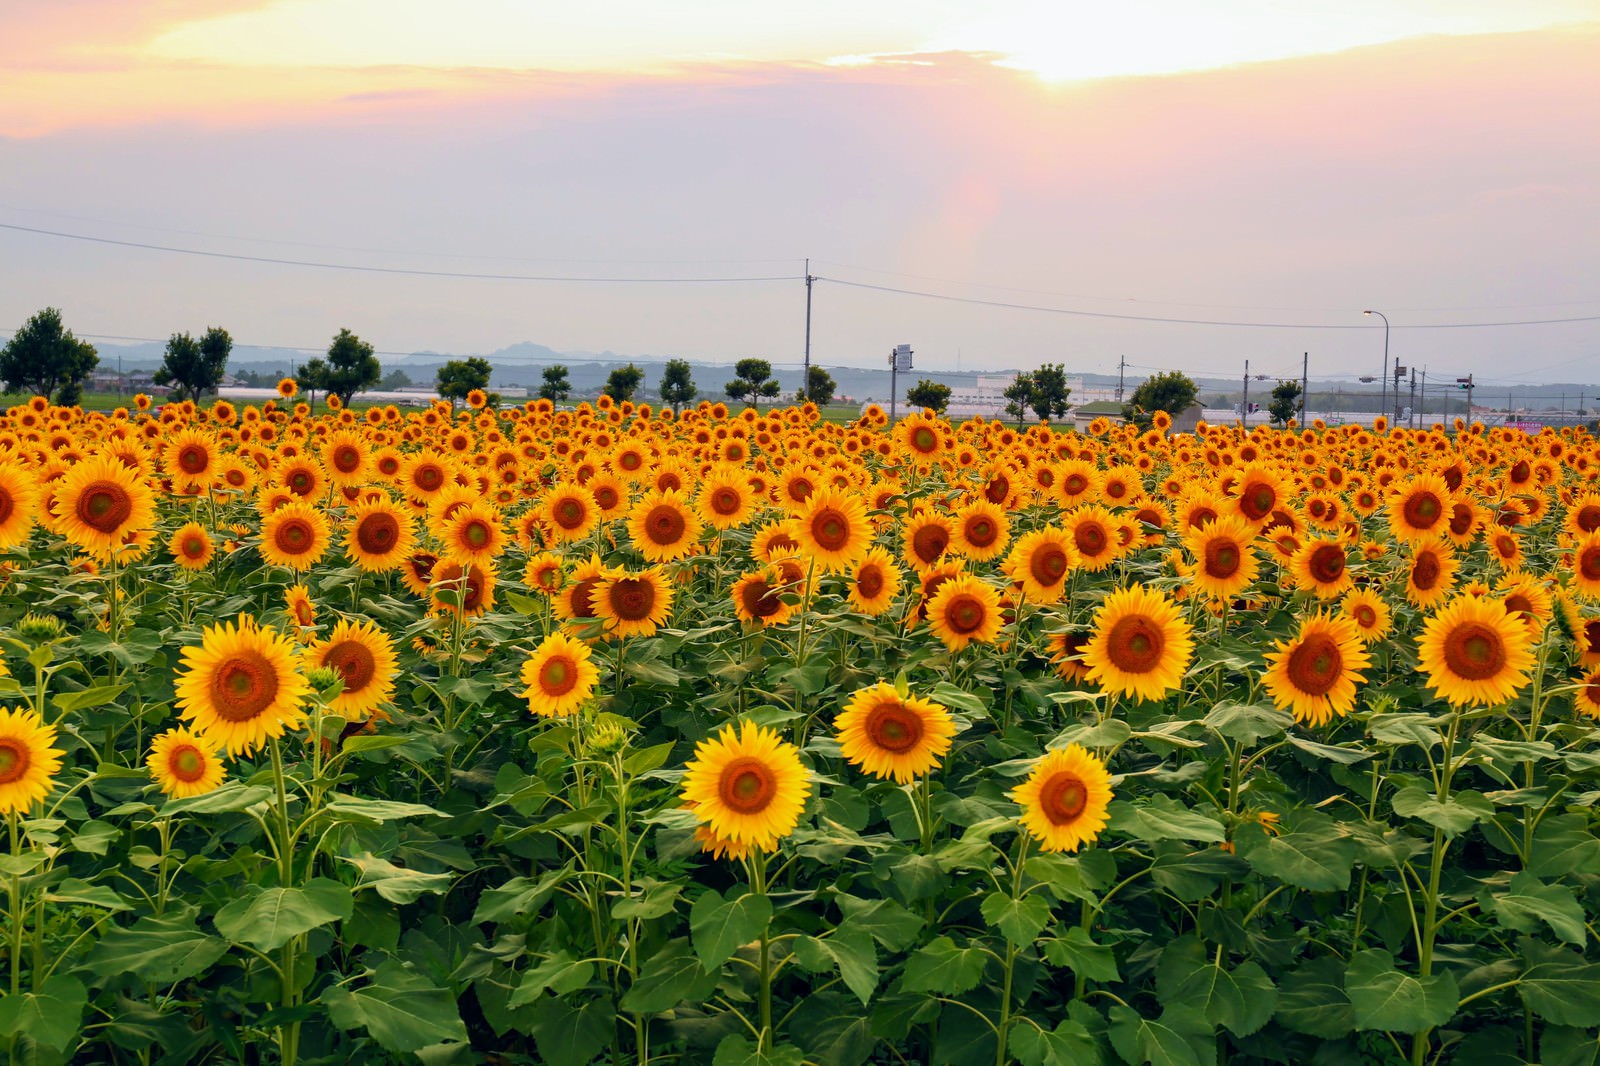 「夕焼けに染まる空と向日葵畑 | フリー素材のぱくたそ」の写真